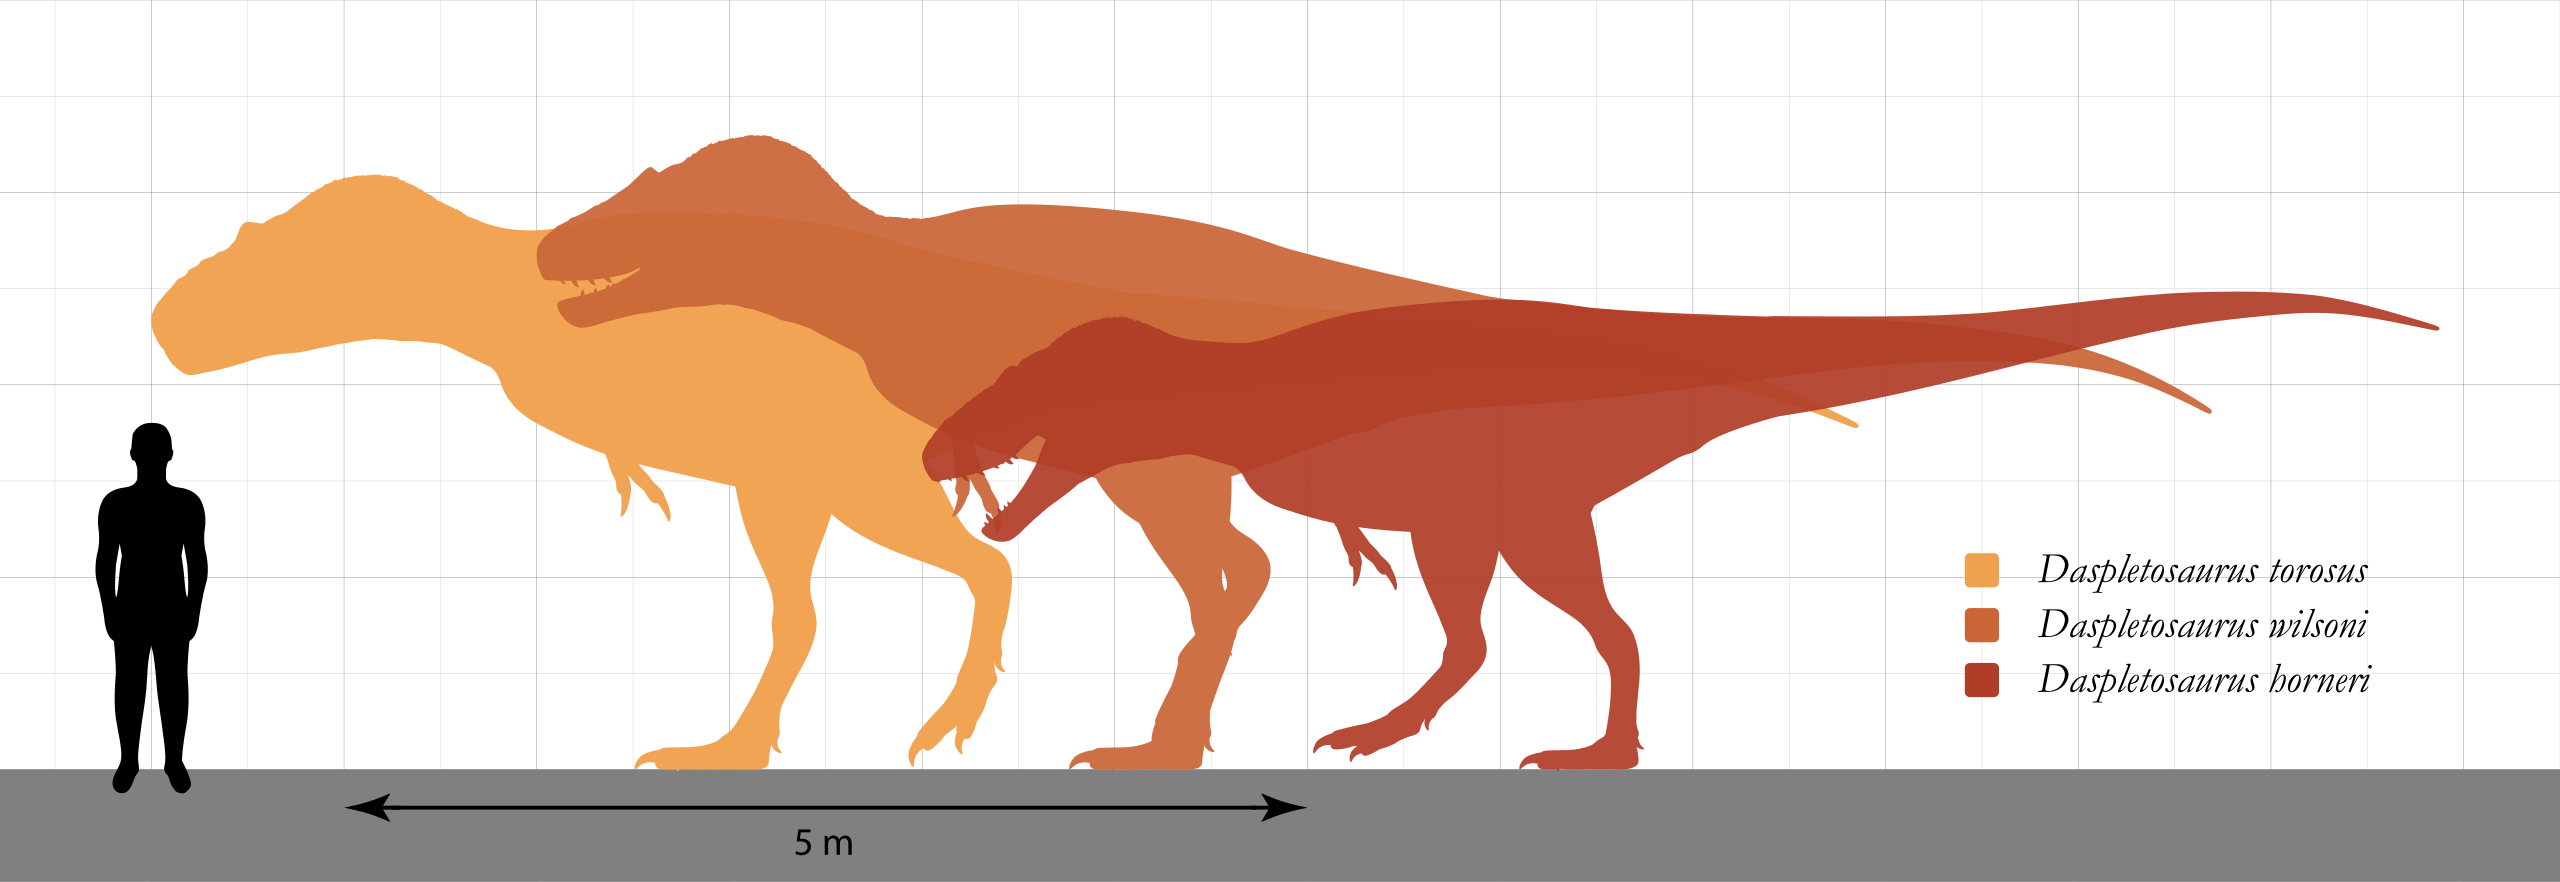 Velikostní porovnání tří známých druhů rodu Daspletosaurus. Největší dosud objevení zástupci tohoto velkého až obřího tyranosaurida patrně dosahovali délky až 11 metrů a hmotnosti přes 4000 kilogramů. Kredit: SlvrHwk; Wikipedia (CC BY-SA 4.0)